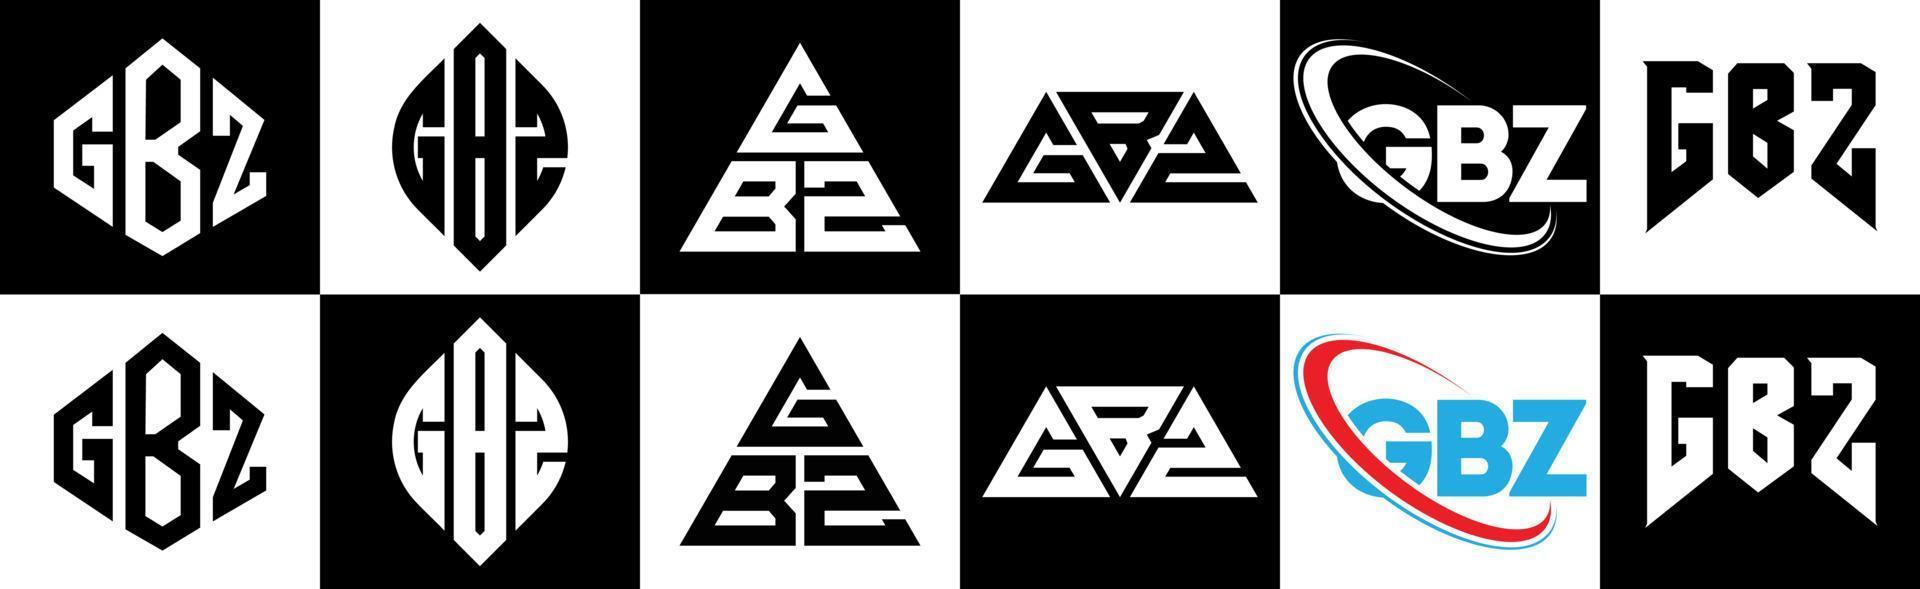 gbz-Buchstaben-Logo-Design in sechs Stilen. gbz polygon, kreis, dreieck, sechseck, flach und einfacher stil mit schwarz-weißem buchstabenlogo in einer zeichenfläche. gbz minimalistisches und klassisches Logo vektor